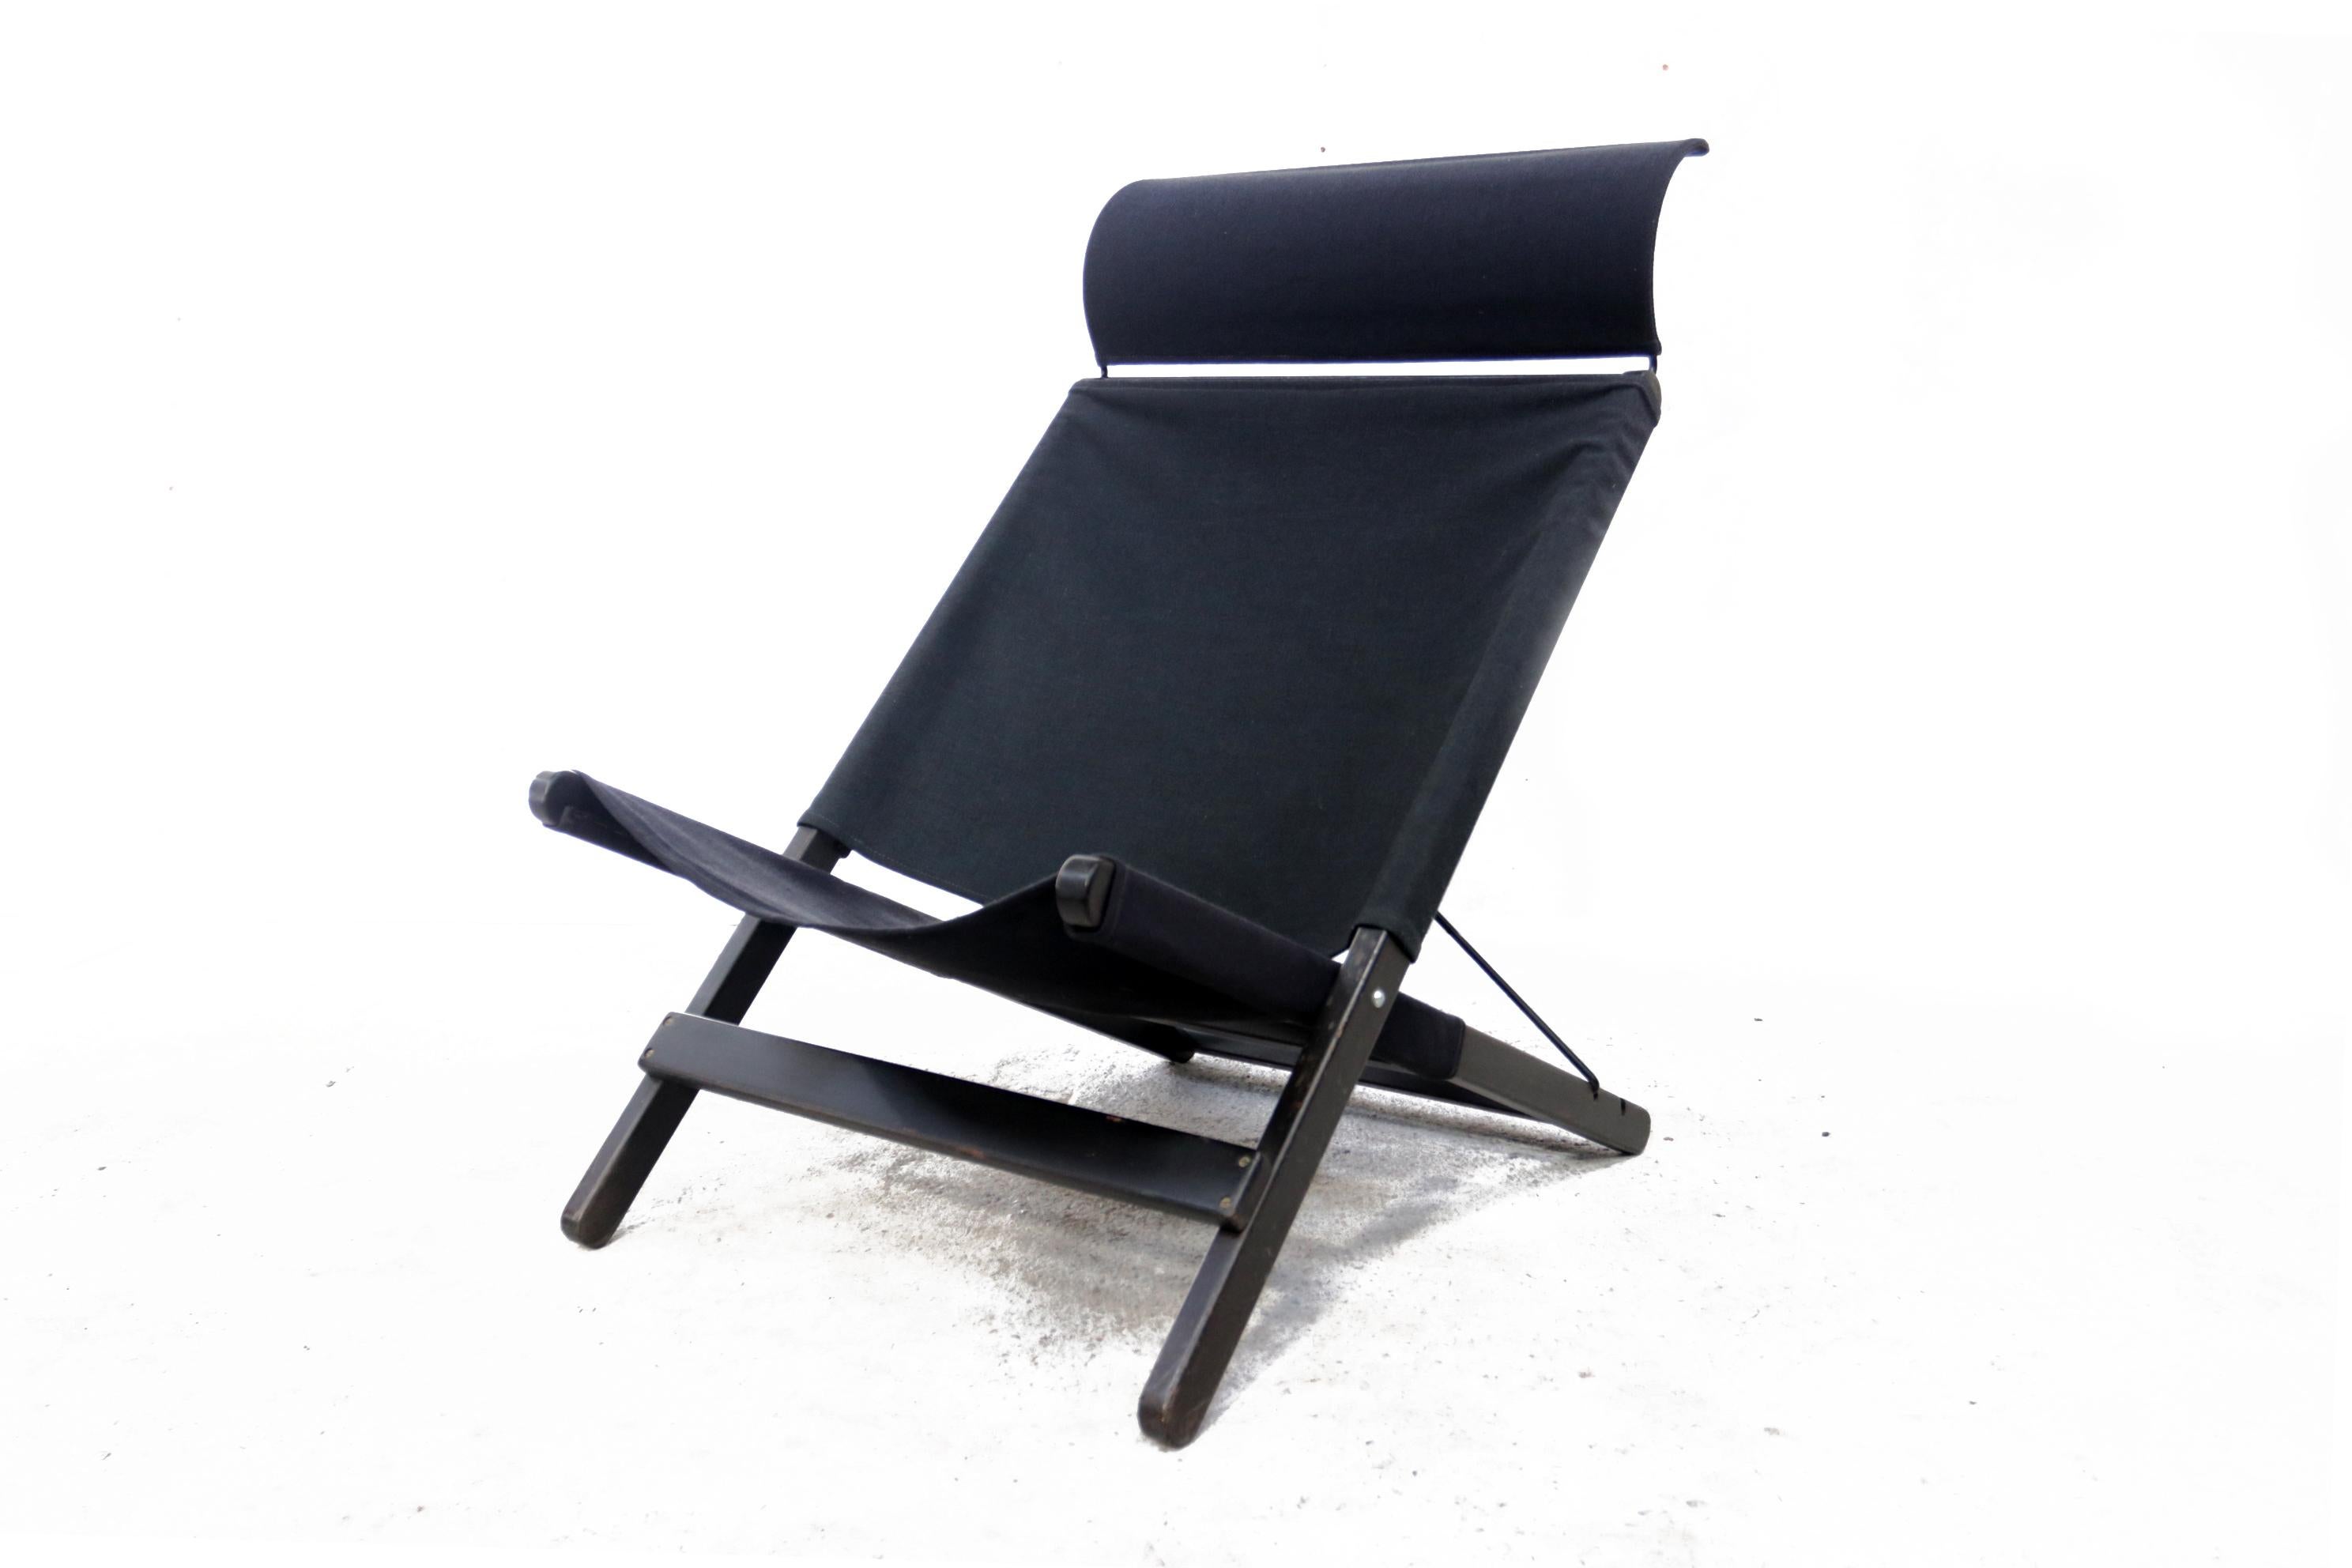 Design-Klappstuhl, entworfen von Tord Björklund für Ikea im Jahr 1991.
Das Modell heißt Hestra. Hergestellt aus dickem Jeansstoff, Holzrahmen, Metallkreuz und Kopfstütze.
Dieser Stuhl passt wie eine Hängematte, also schließen Sie die Augen und Sie